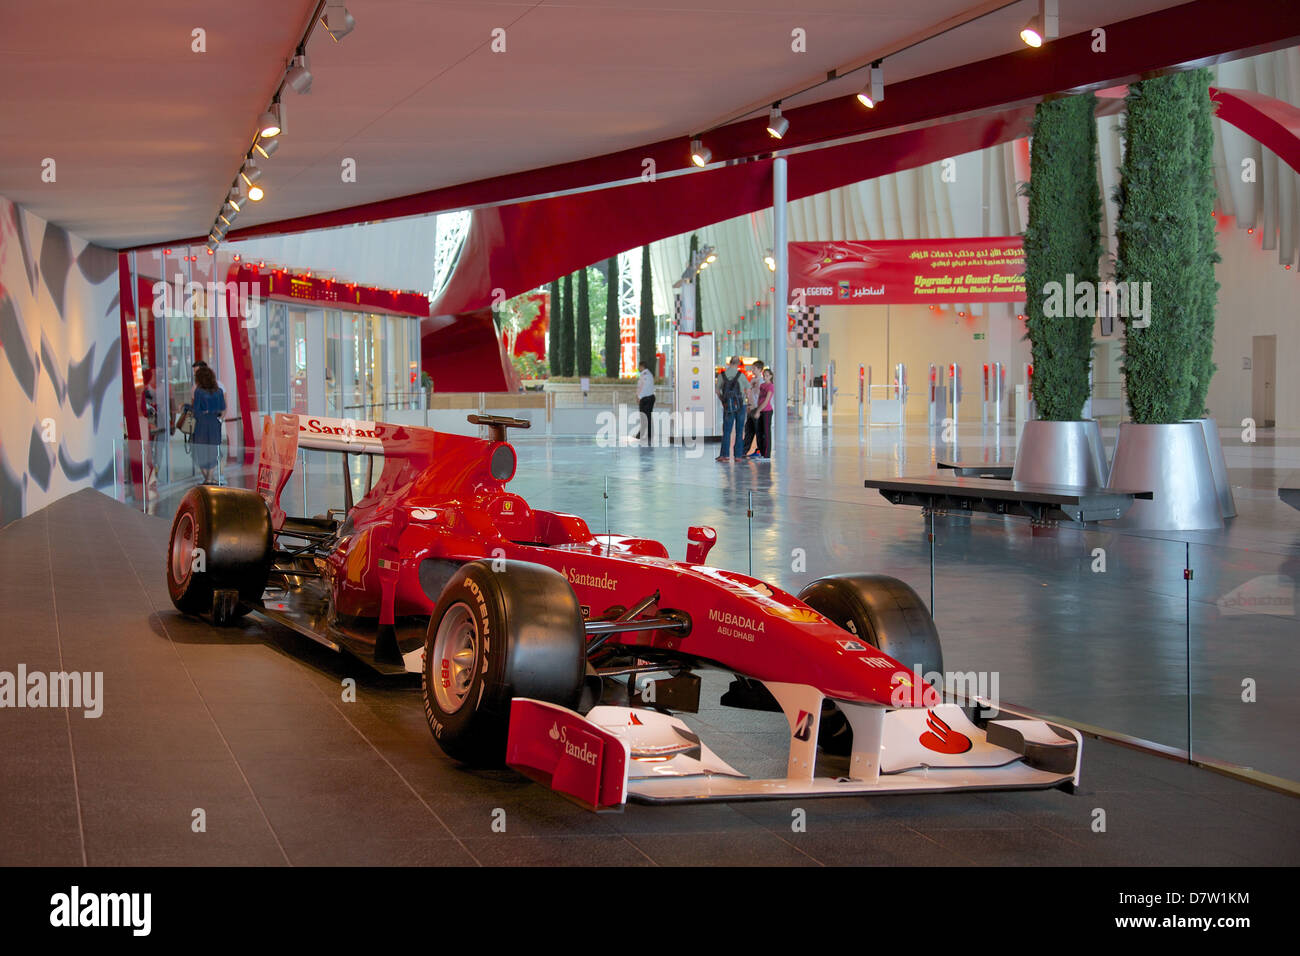 Voiture de course de Formule 1, Ferrari World, Yas Island, Abu Dhabi, Émirats arabes unis, Moyen Orient Banque D'Images